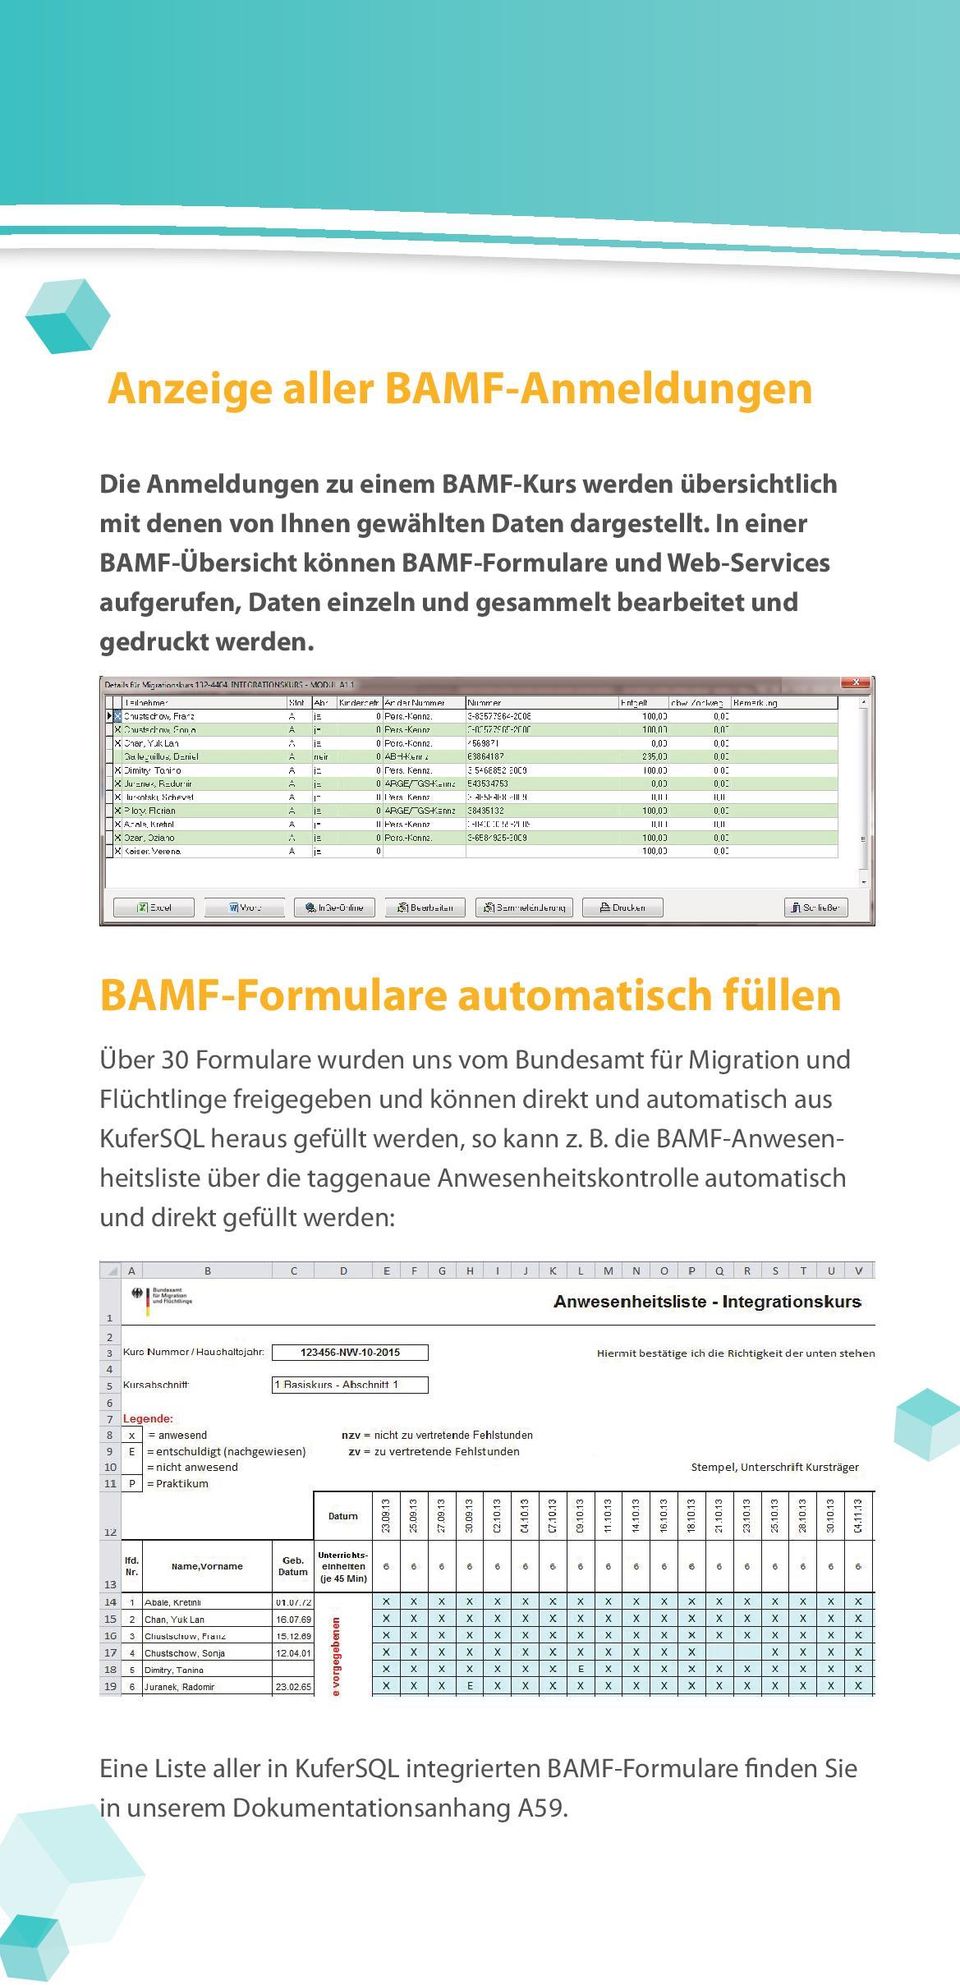 BAMF-Formulare automatisch füllen Über 30 Formulare wurden uns vom Bundesamt für Migration und Flüchtlinge freigegeben und können direkt und automatisch aus KuferSQL